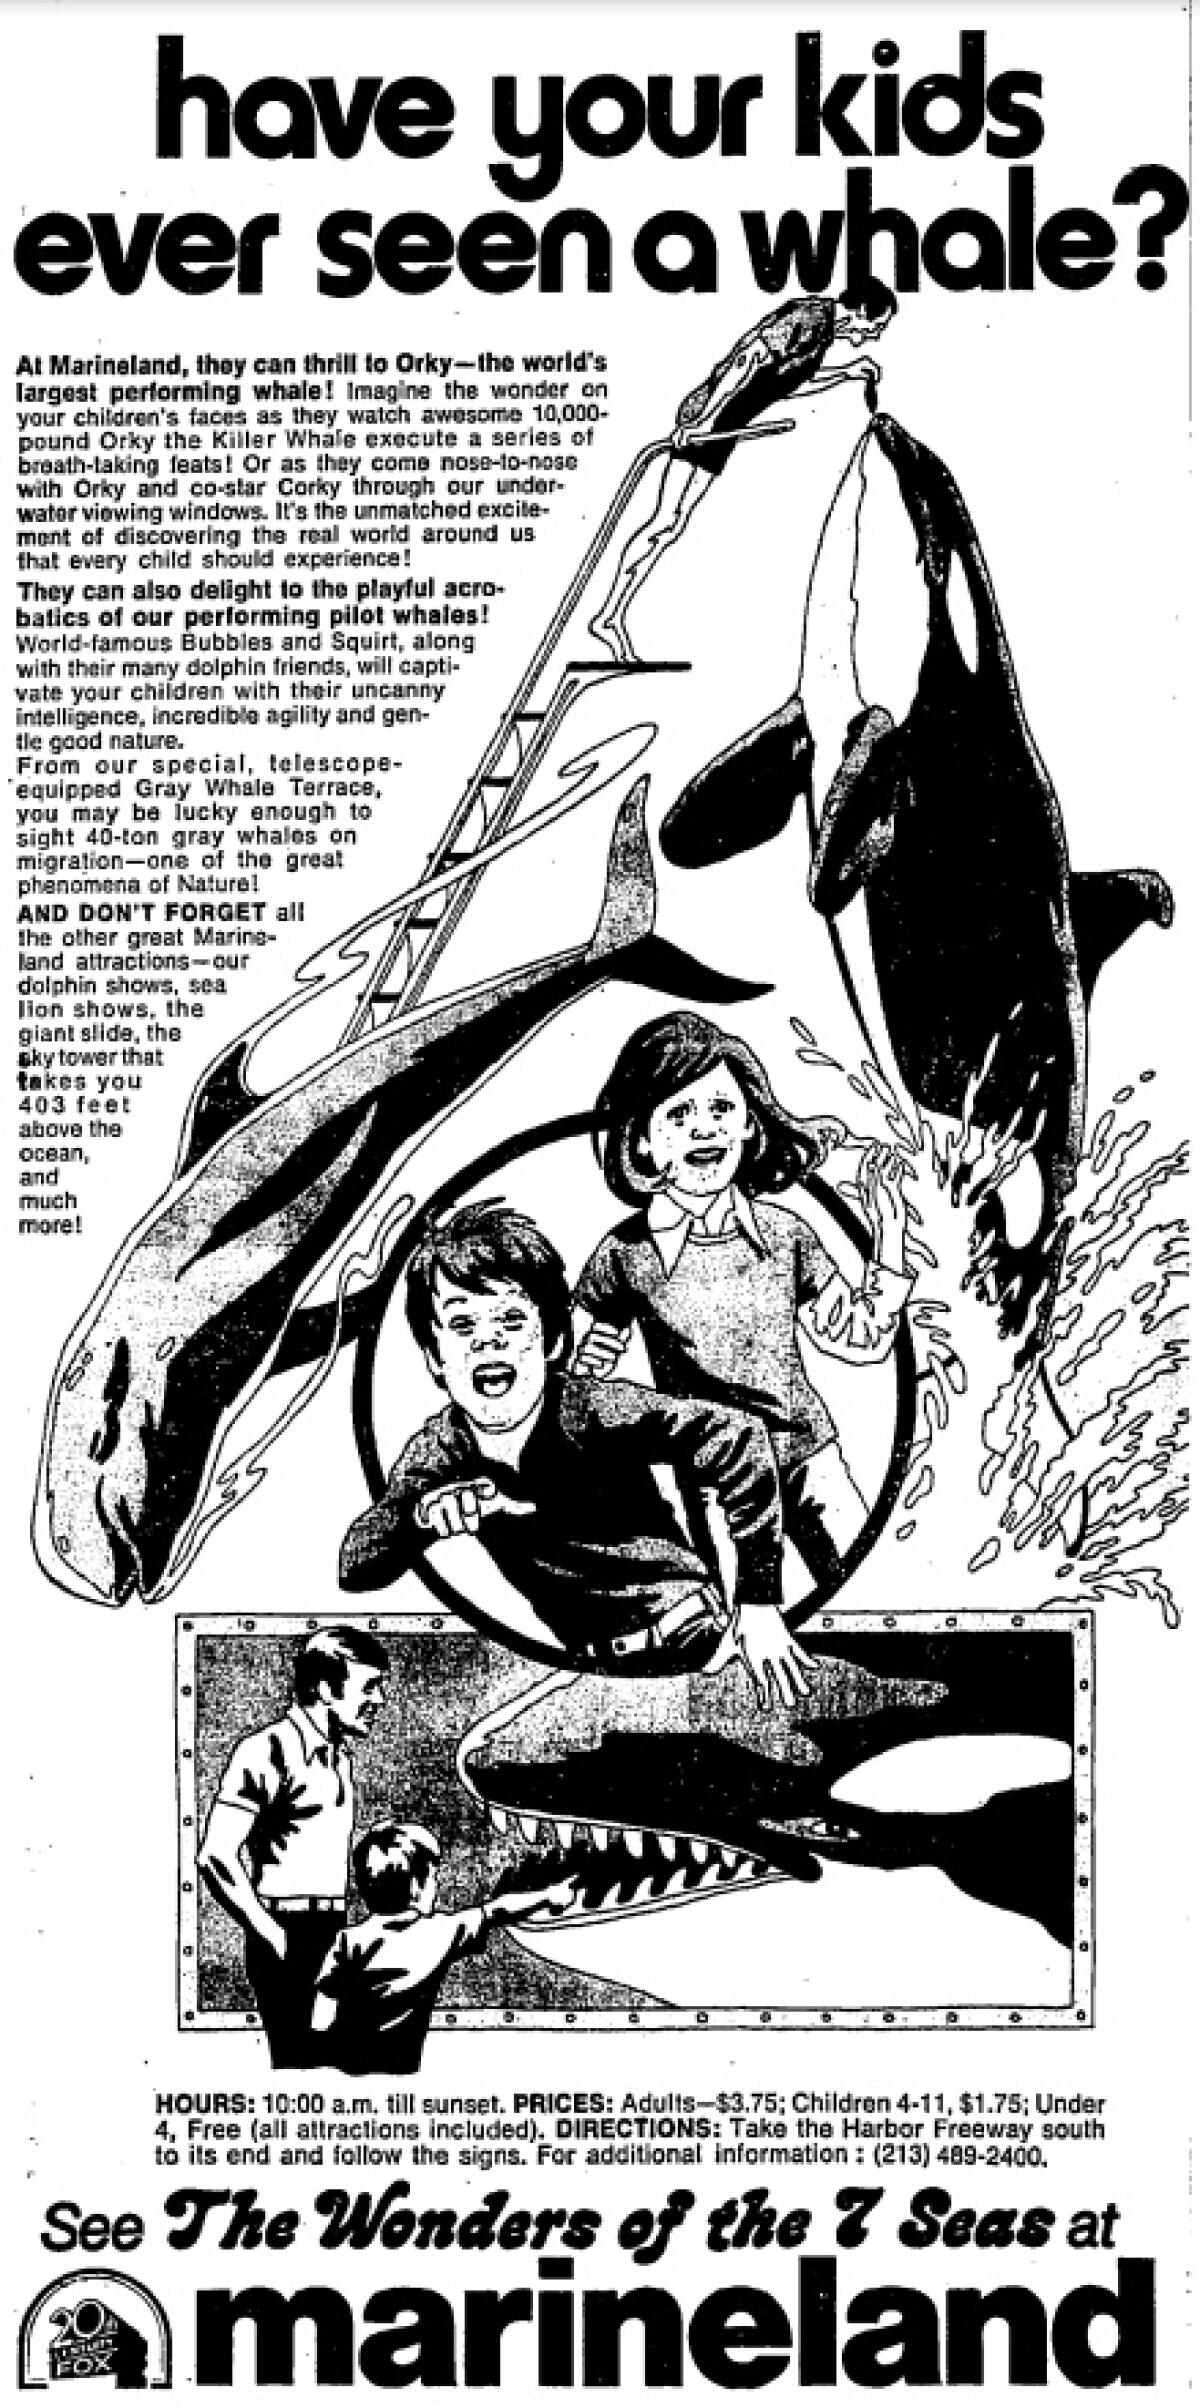 Une annonce dans un journal pour Marineland demande "Vos enfants ont-ils déjà vu une baleine ?"